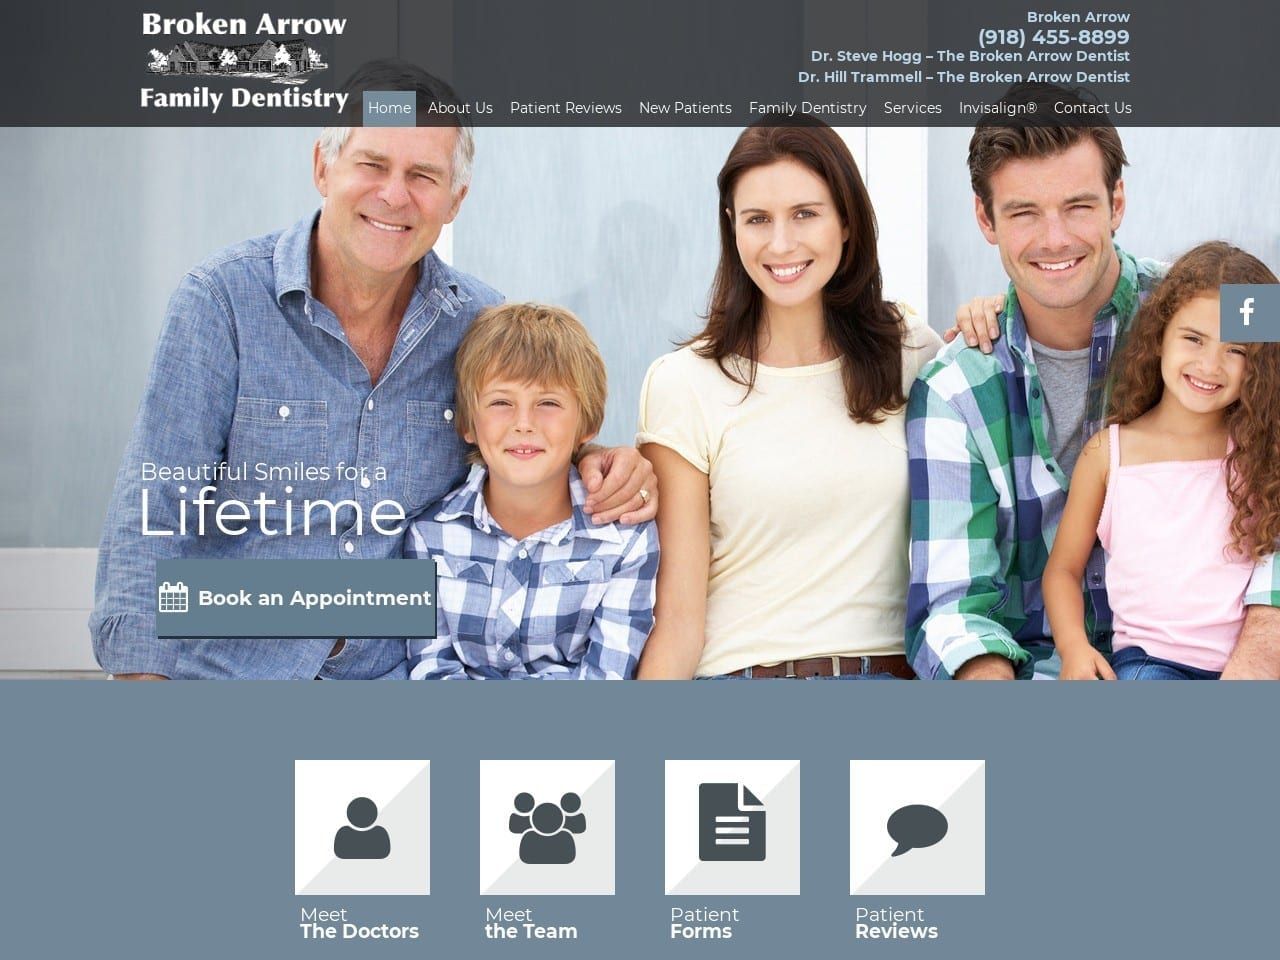 Broken Arrow Family Dentistry Website Screenshot from bafamilydentistry.com